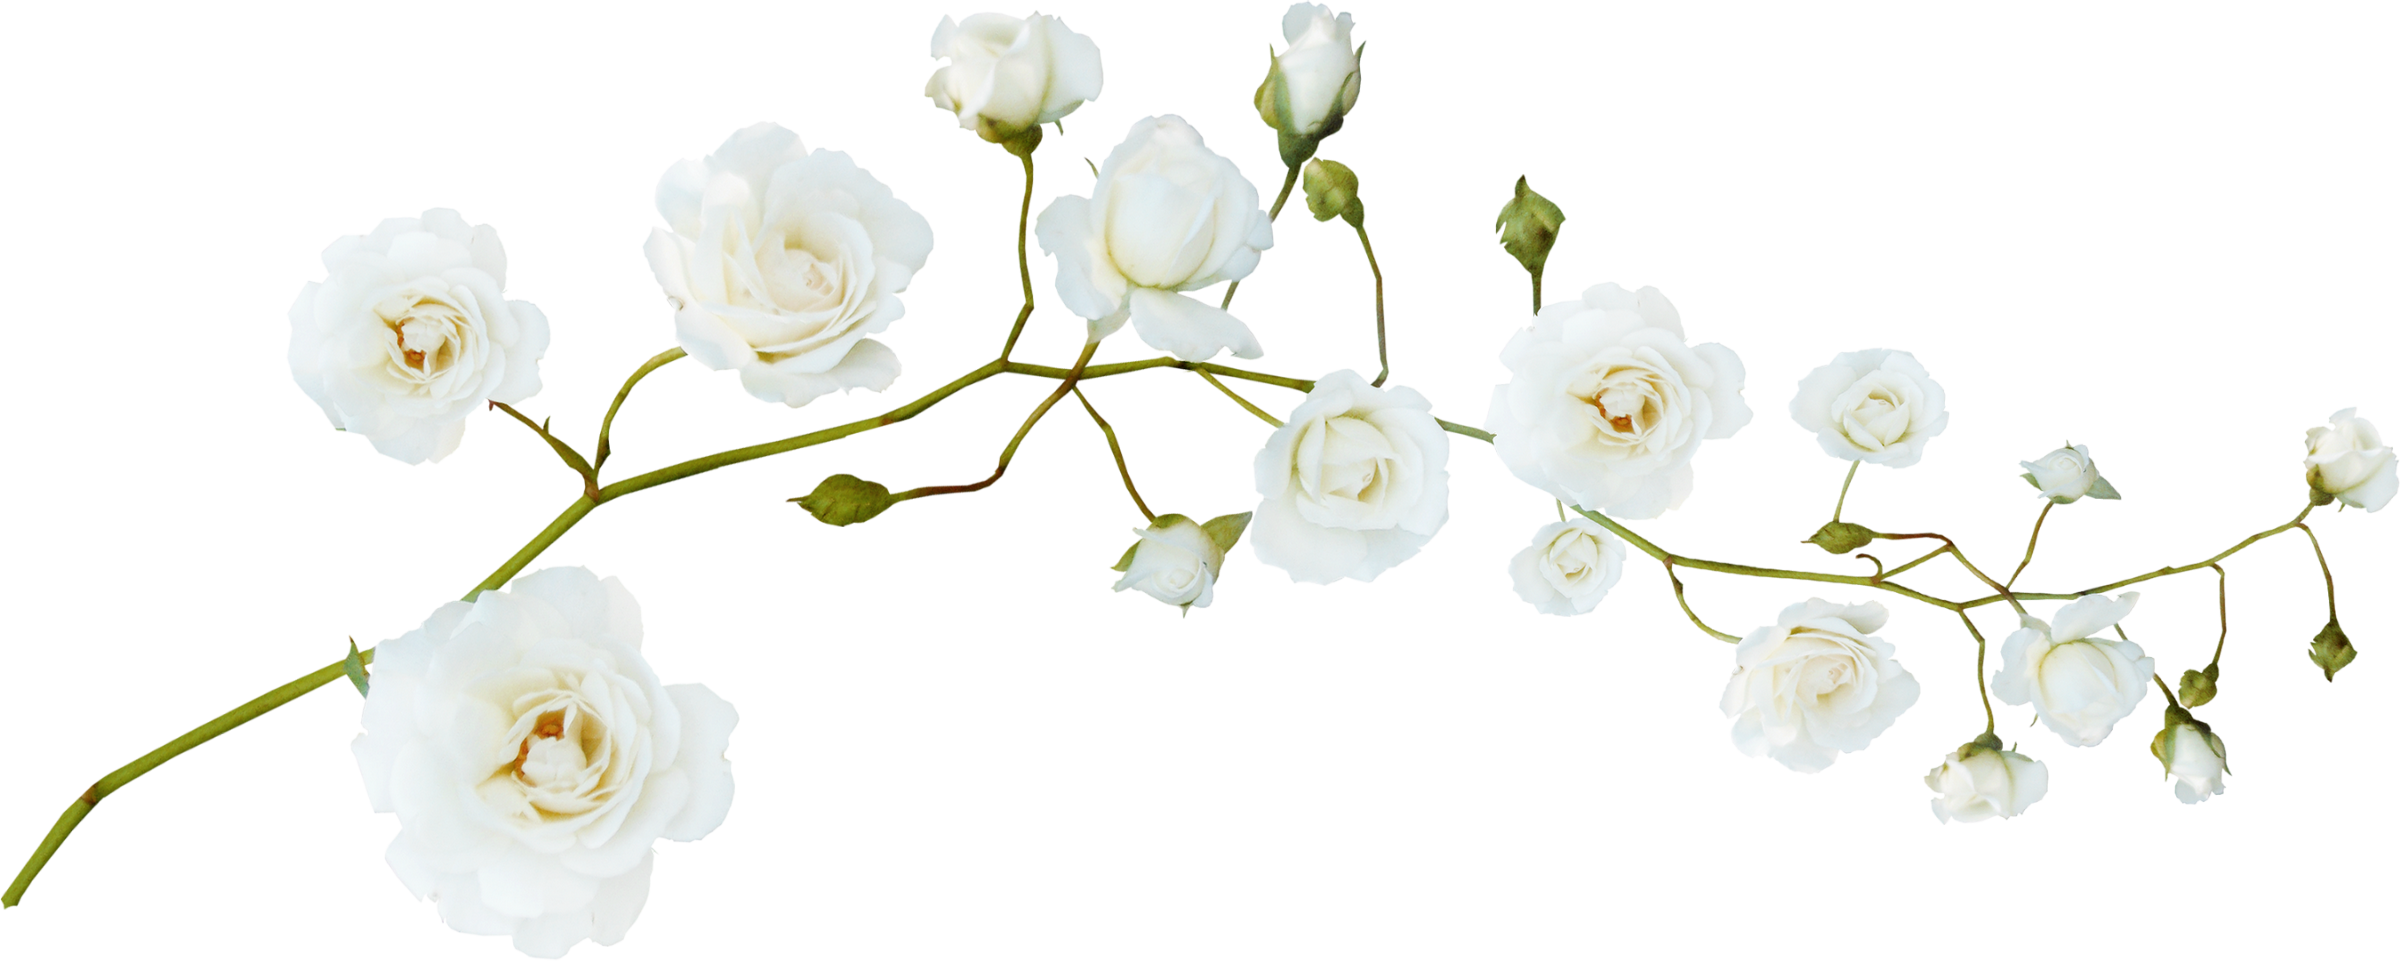 Настоящие цветы на прозрачном фоне фото